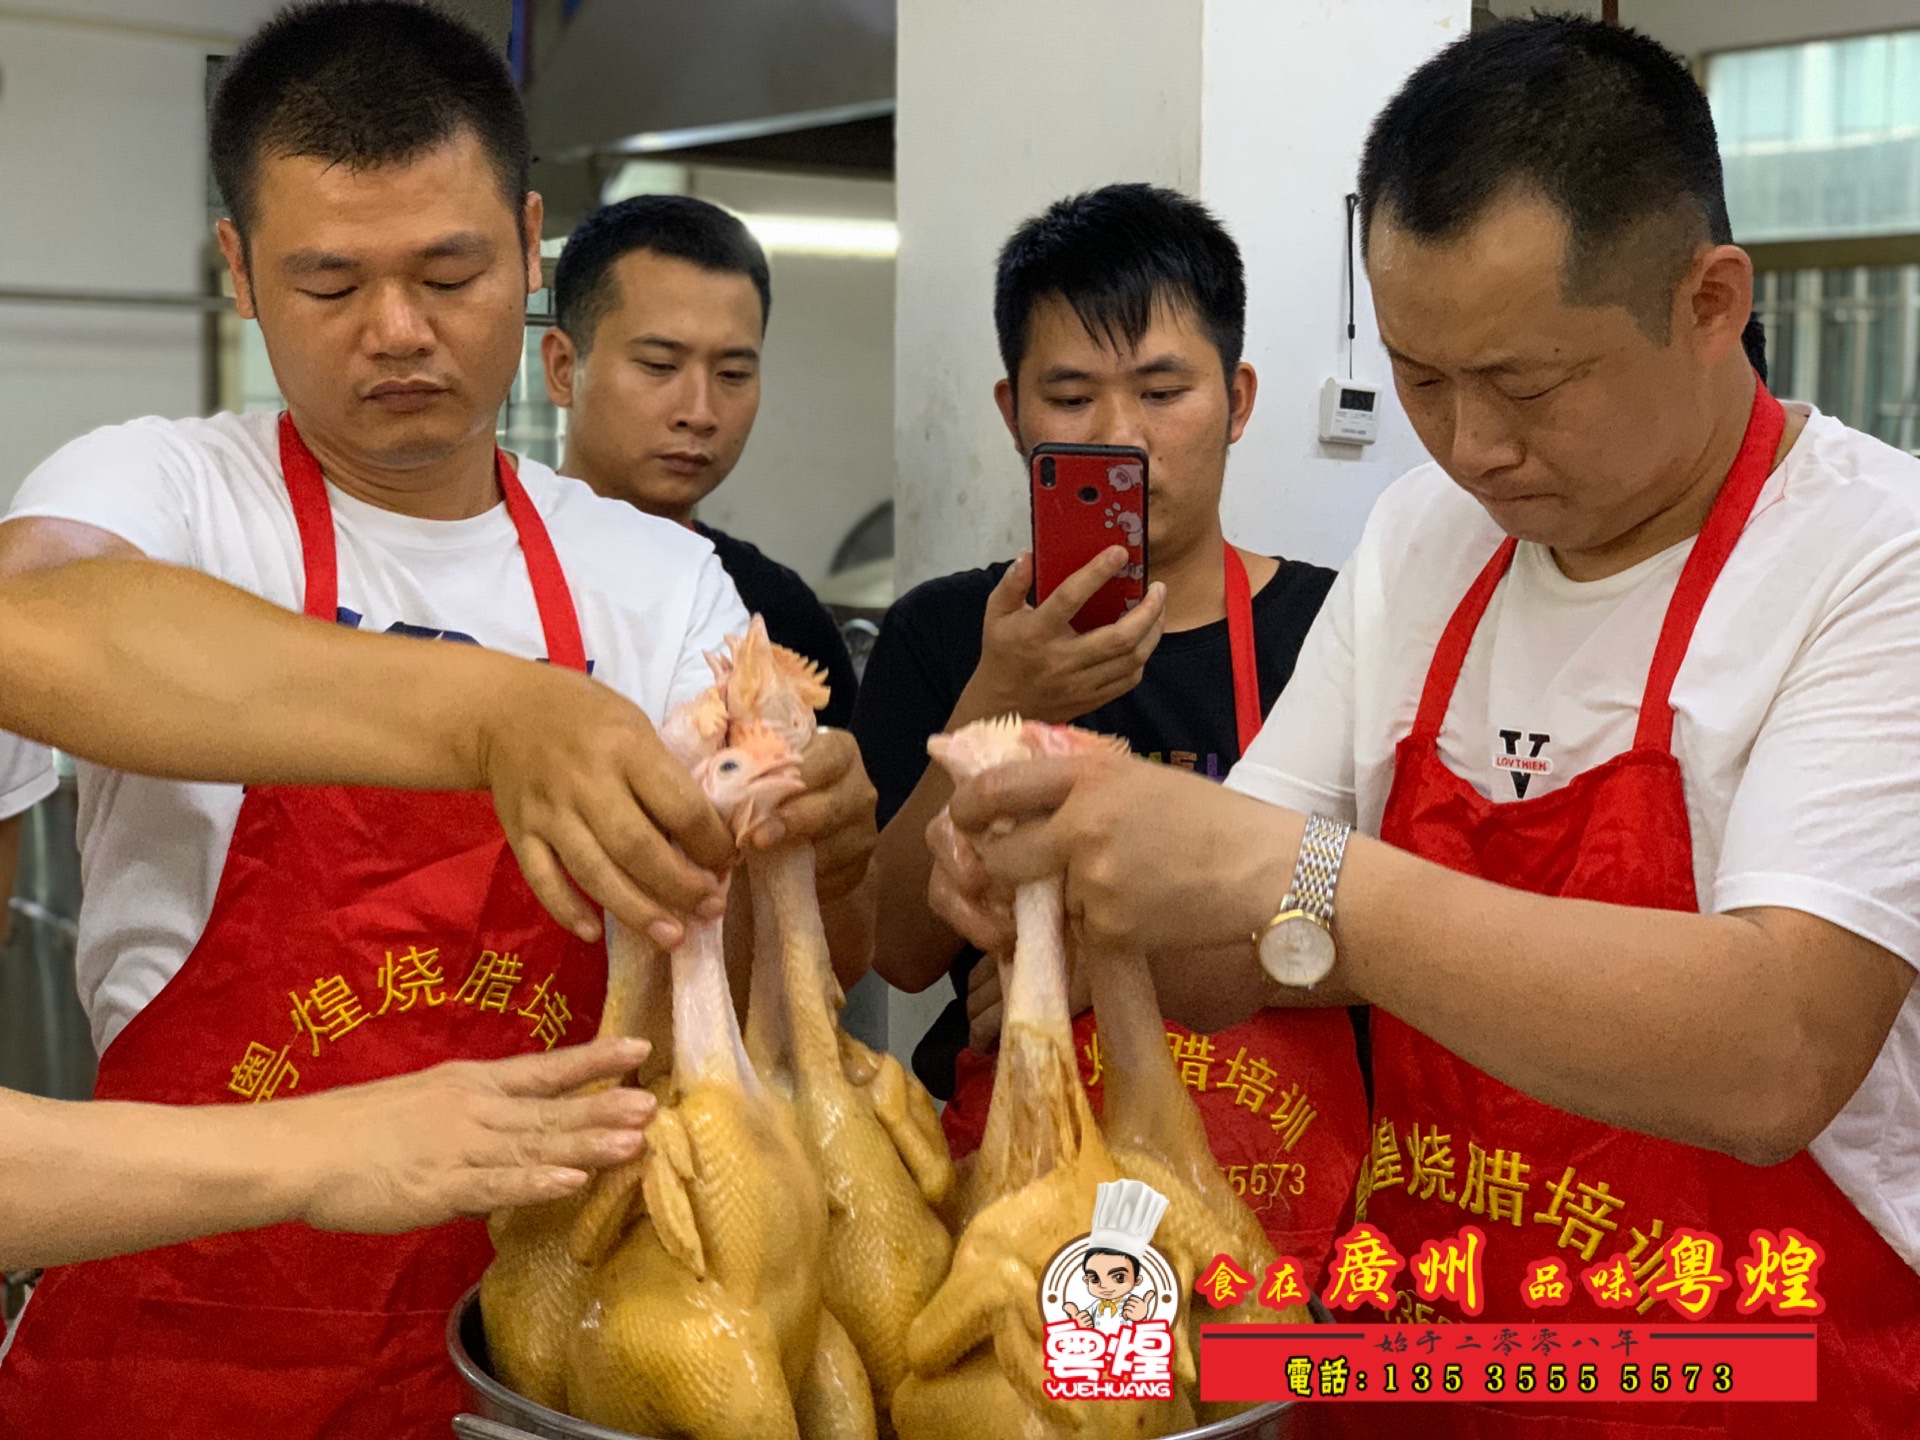 2019.10.12 豉油鸡做法 广州烧腊培训 